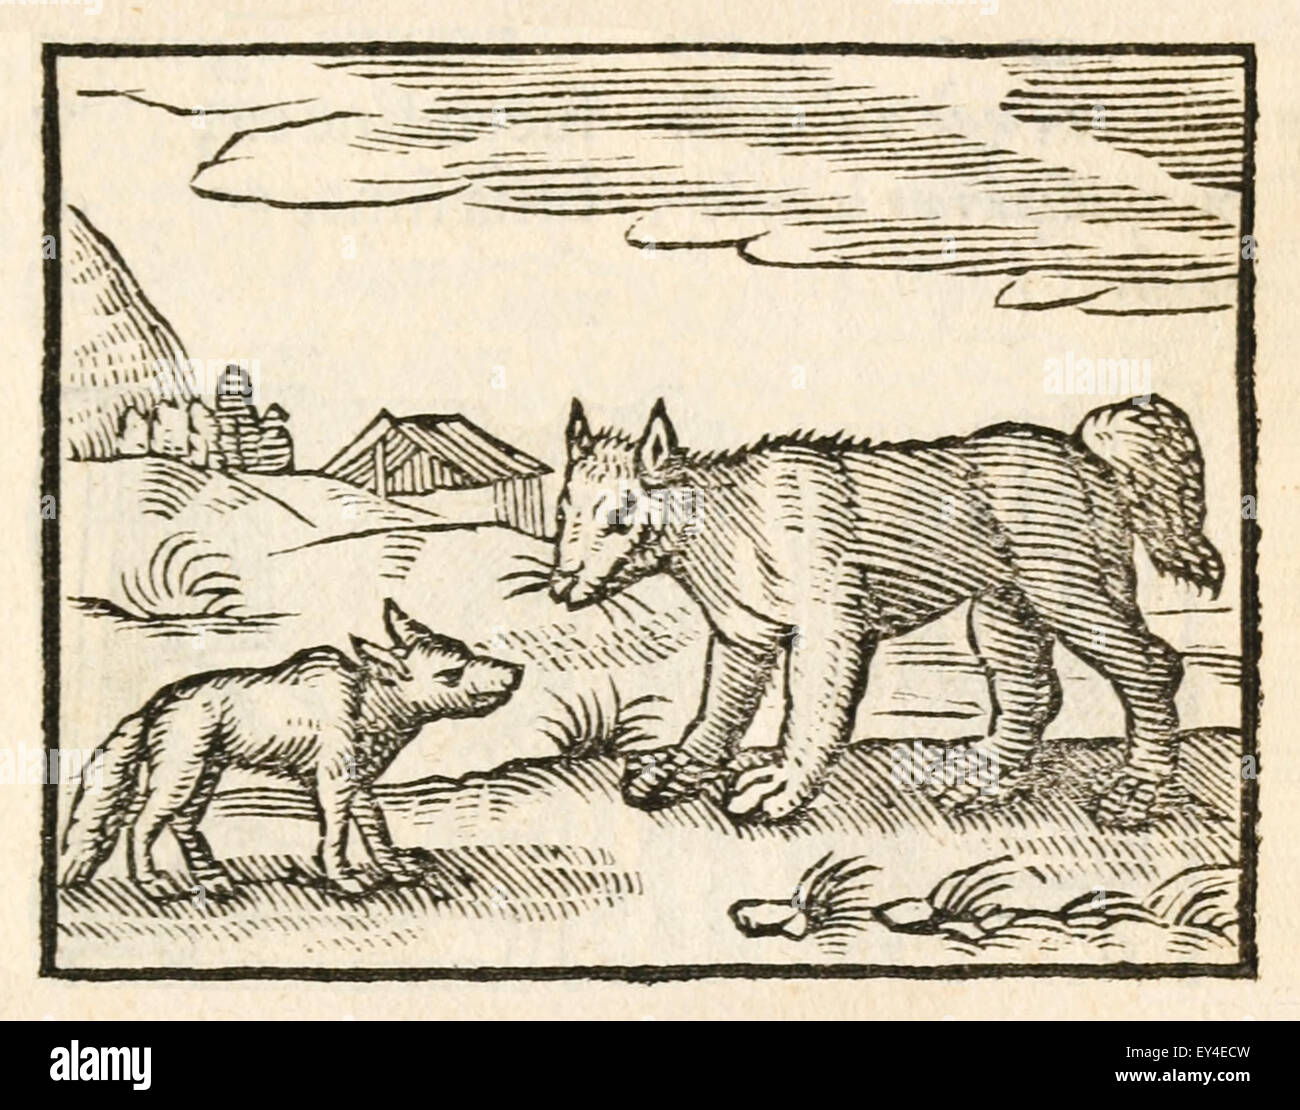 " Il cane e il lupo" favola di Esopo (circa 600BC). Un lupo affamato incontra un ben nutrito cane e complimenti a lui per il suo aspetto elegante. Il cane descrive la sua vita di semplicità e invita il lupo a unirsi a lui. Come andare sul loro modo, il lupo chiede perché la pelliccia attorno al collo del cane è usurato. Egli risponde che è semplicemente causata dal collare ha da indossare a casa. Il lupo quindi lo lascia, dichiarando che la pancia piena è un cattivo prezzo da pagare per la libertà. Xvii secolo stampa xilografia illustrante Esopo favole. Vedere la descrizione per maggiori informazioni. Foto Stock